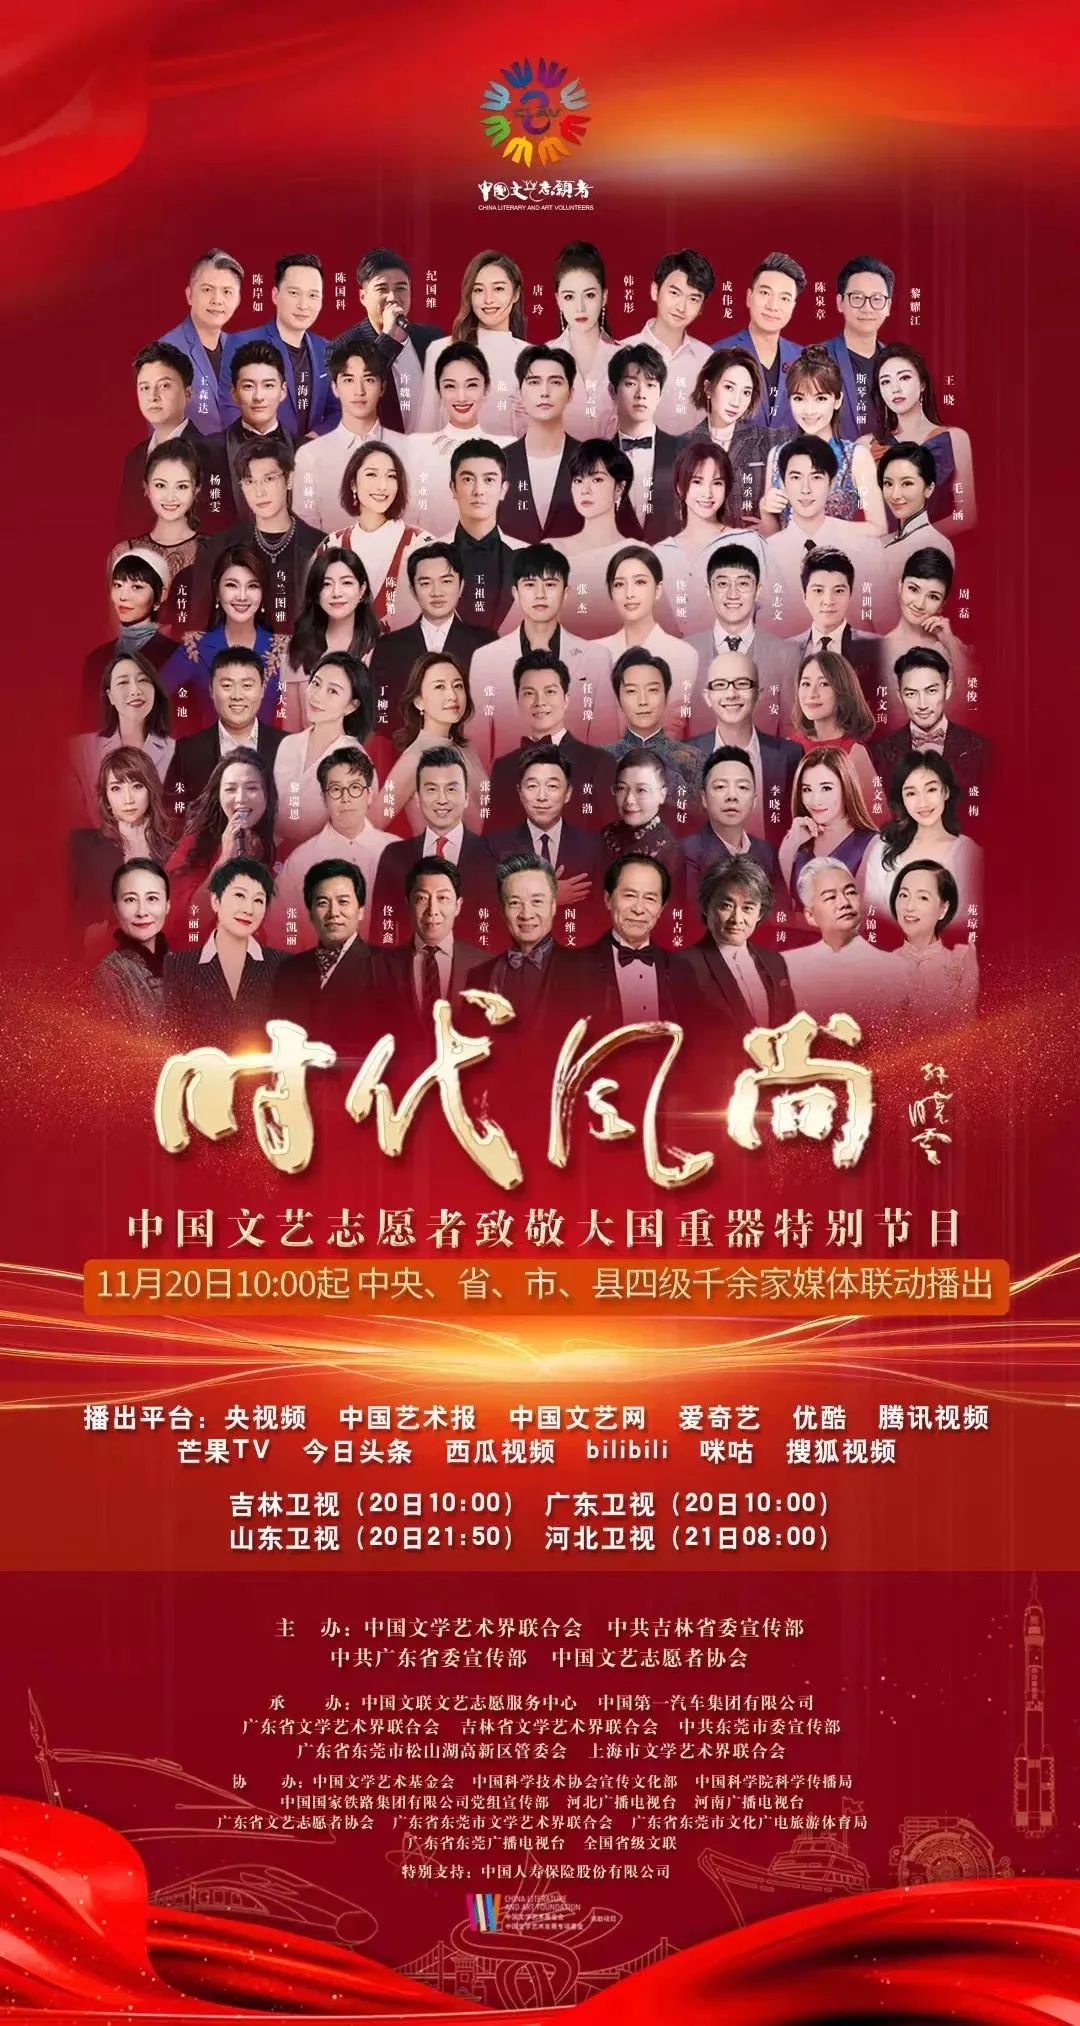 “时代风尚”—— 中国文艺志愿者致敬大国重器特别节目正式上线